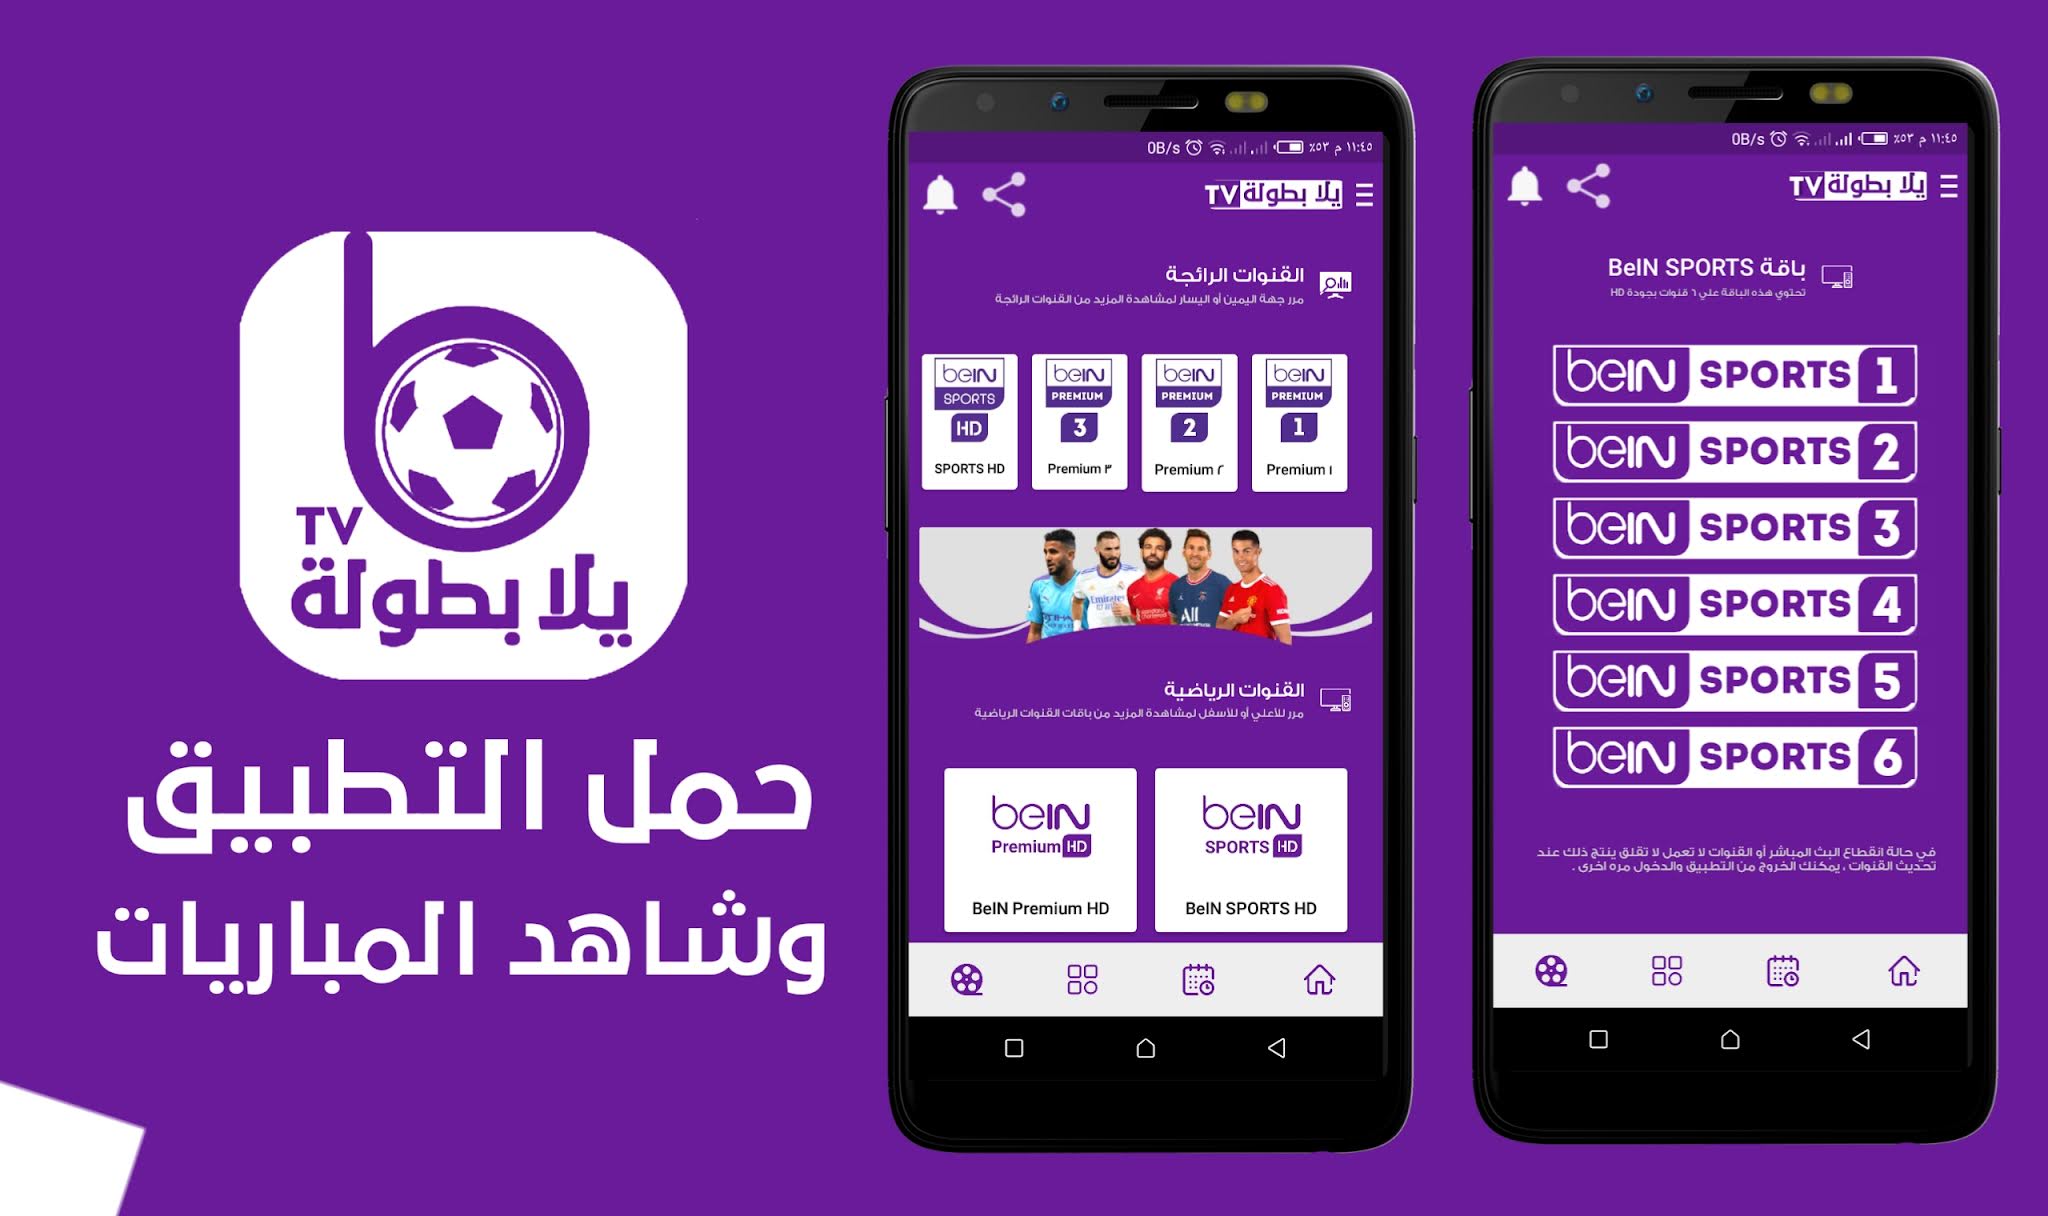 تحميل تطبيق يلا بطولة TV الإصدار الجديد لمشاهدة القنوات الرياضية والترفيهية Yallabotola TV app .